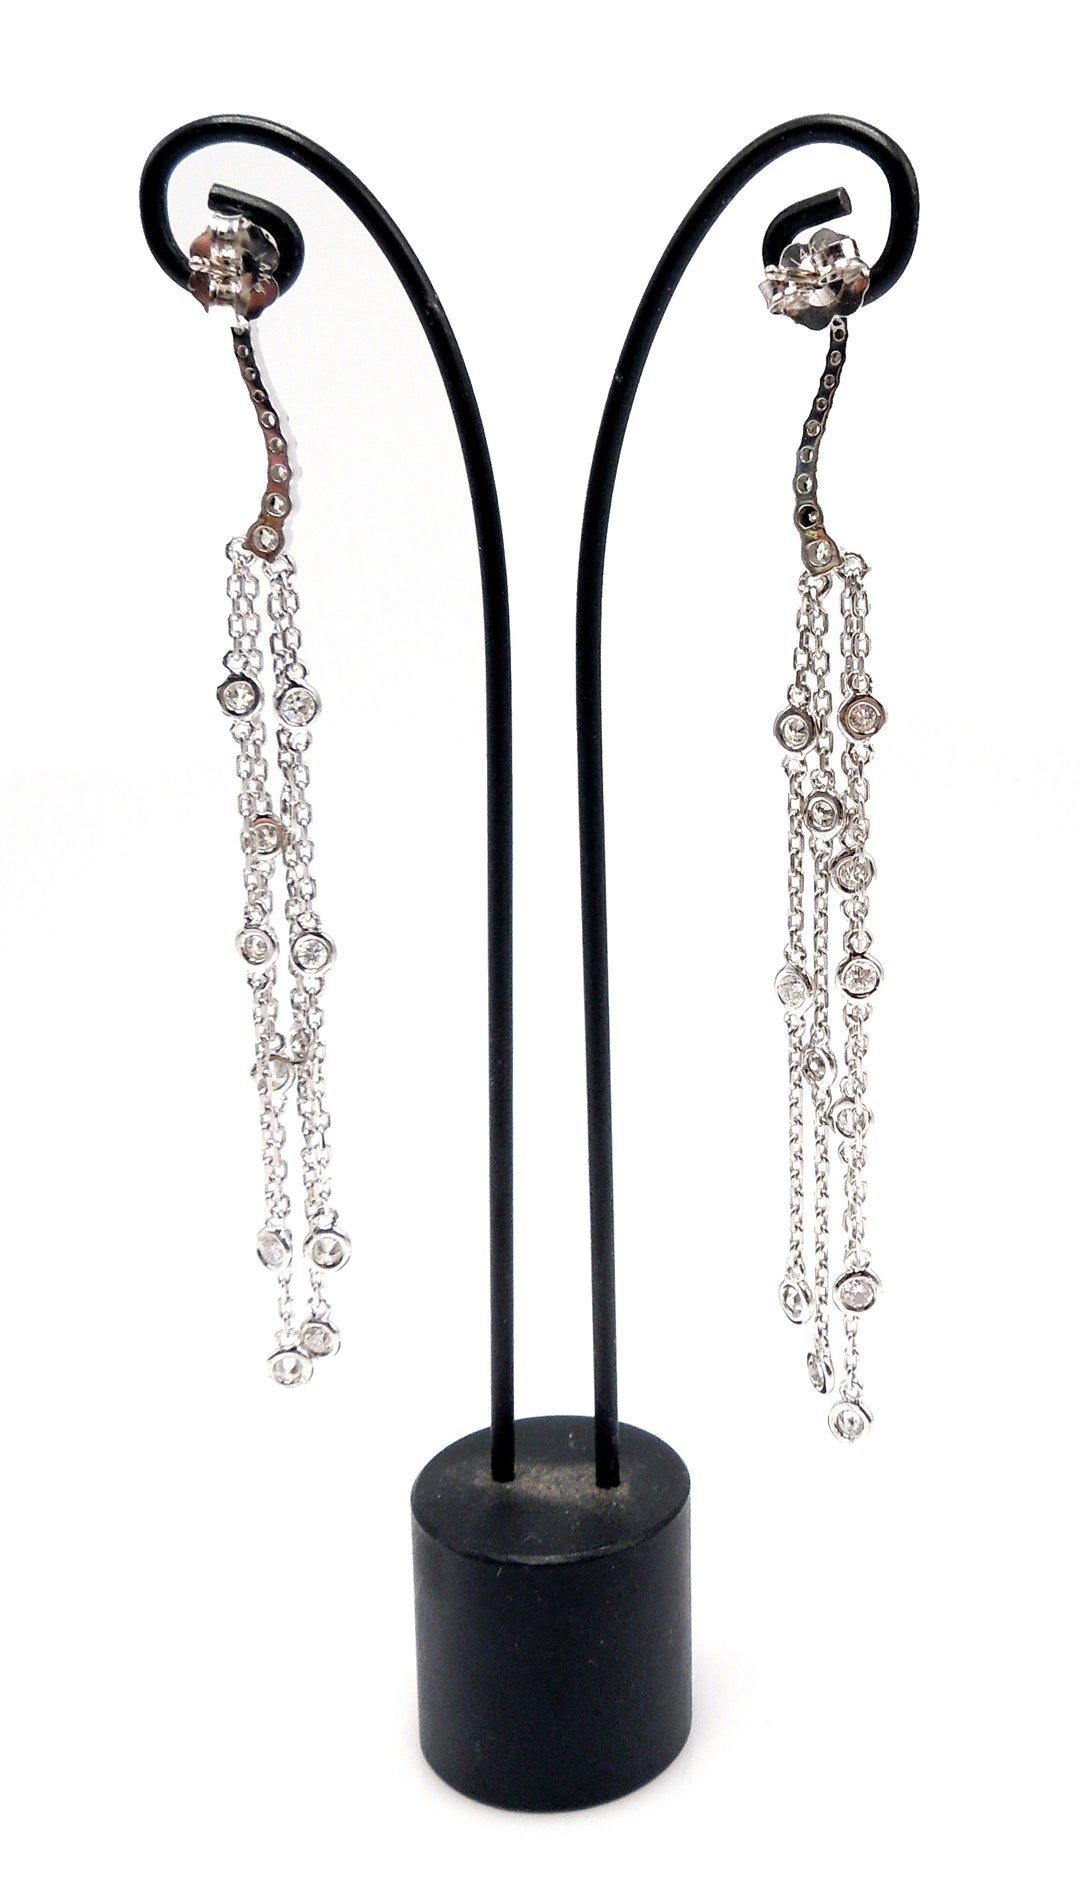 1.11ct Bezel Set Diamond Chain Drop Earrings in White Gold